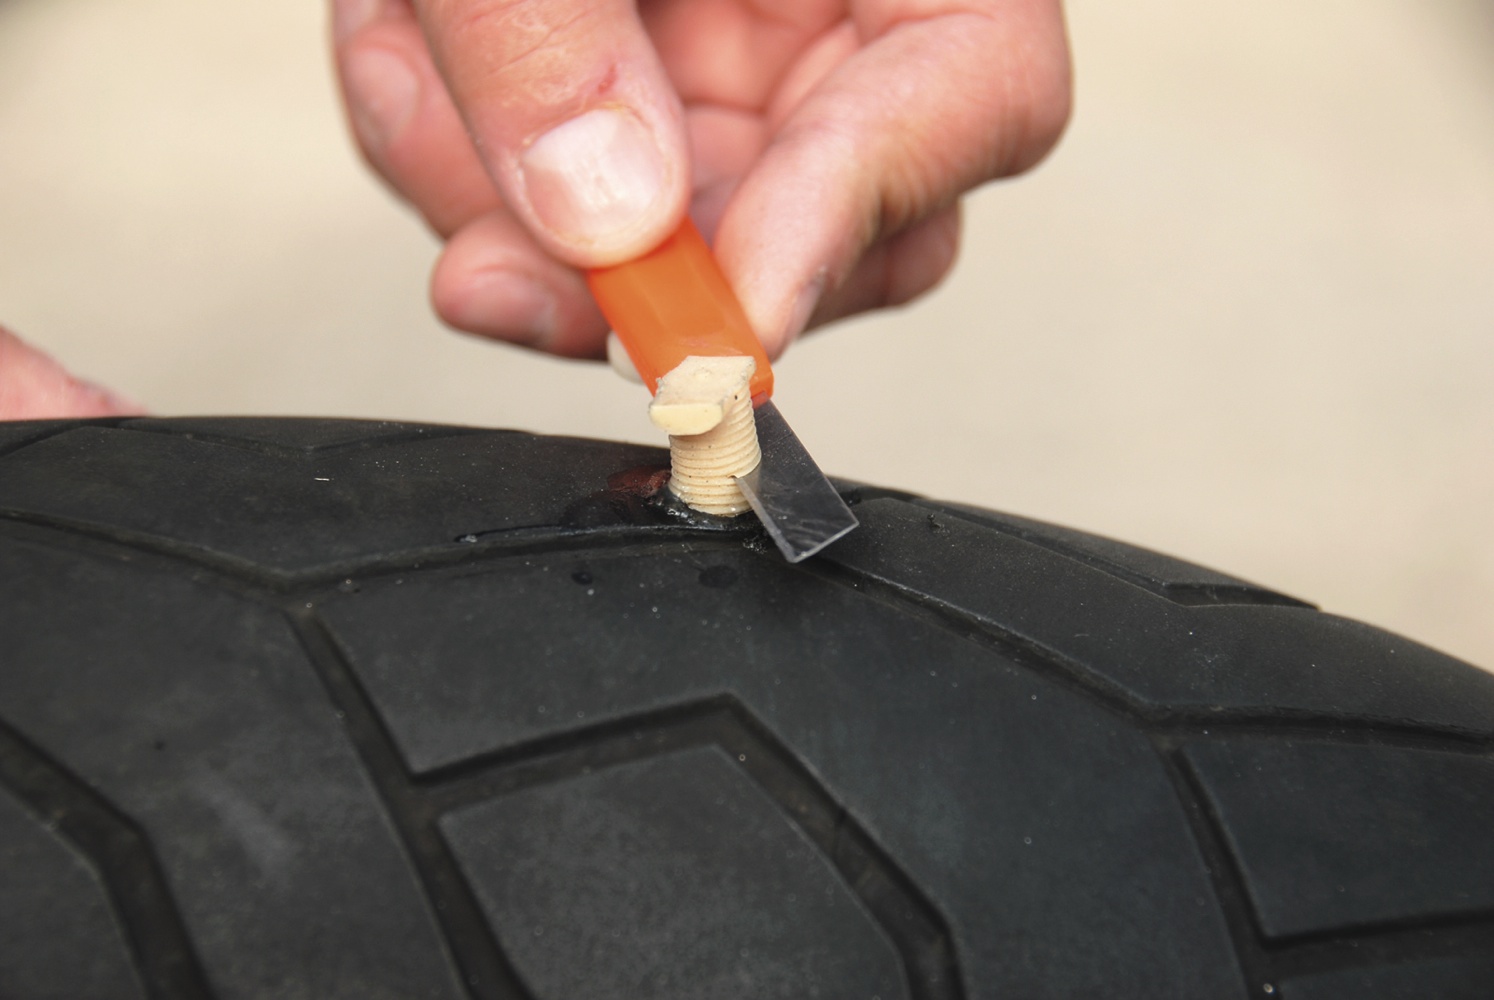 Gomma moto forata: come riparare uno pneumatico a terra con il kit di  riparazione e la bomboletta. Video - Motociclismo